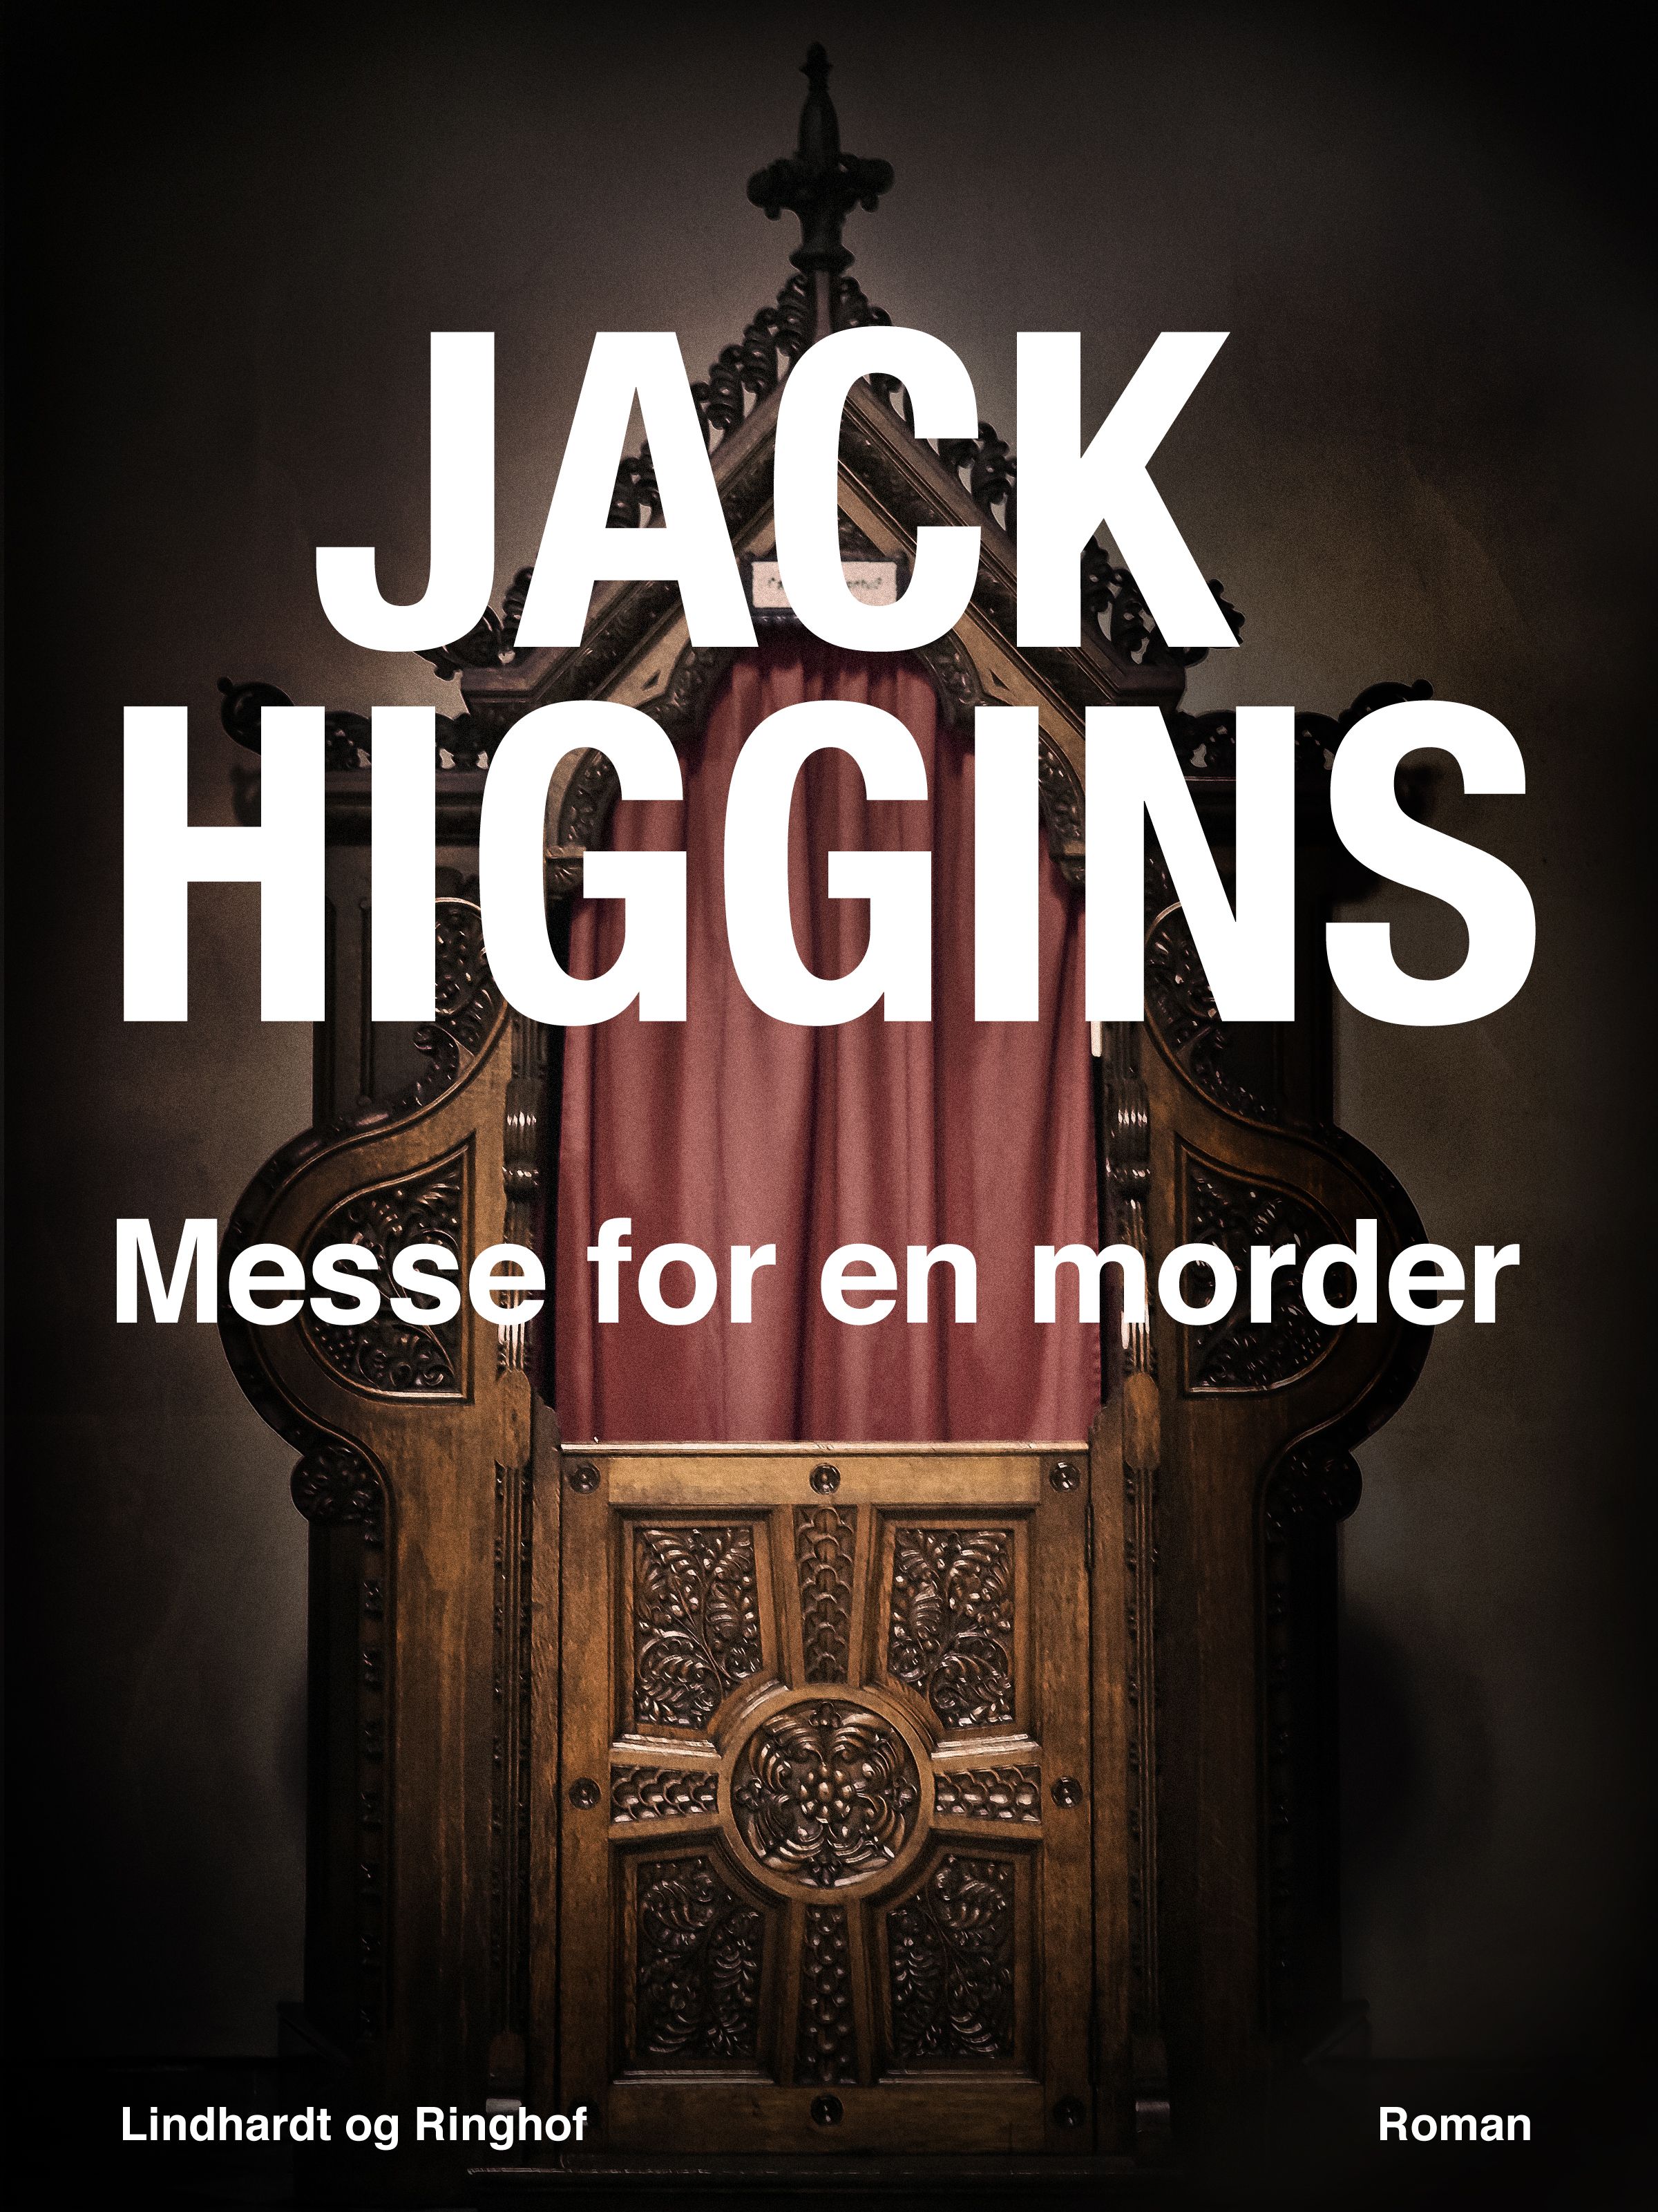 Messe for en morder, eBook by Jack Higgins